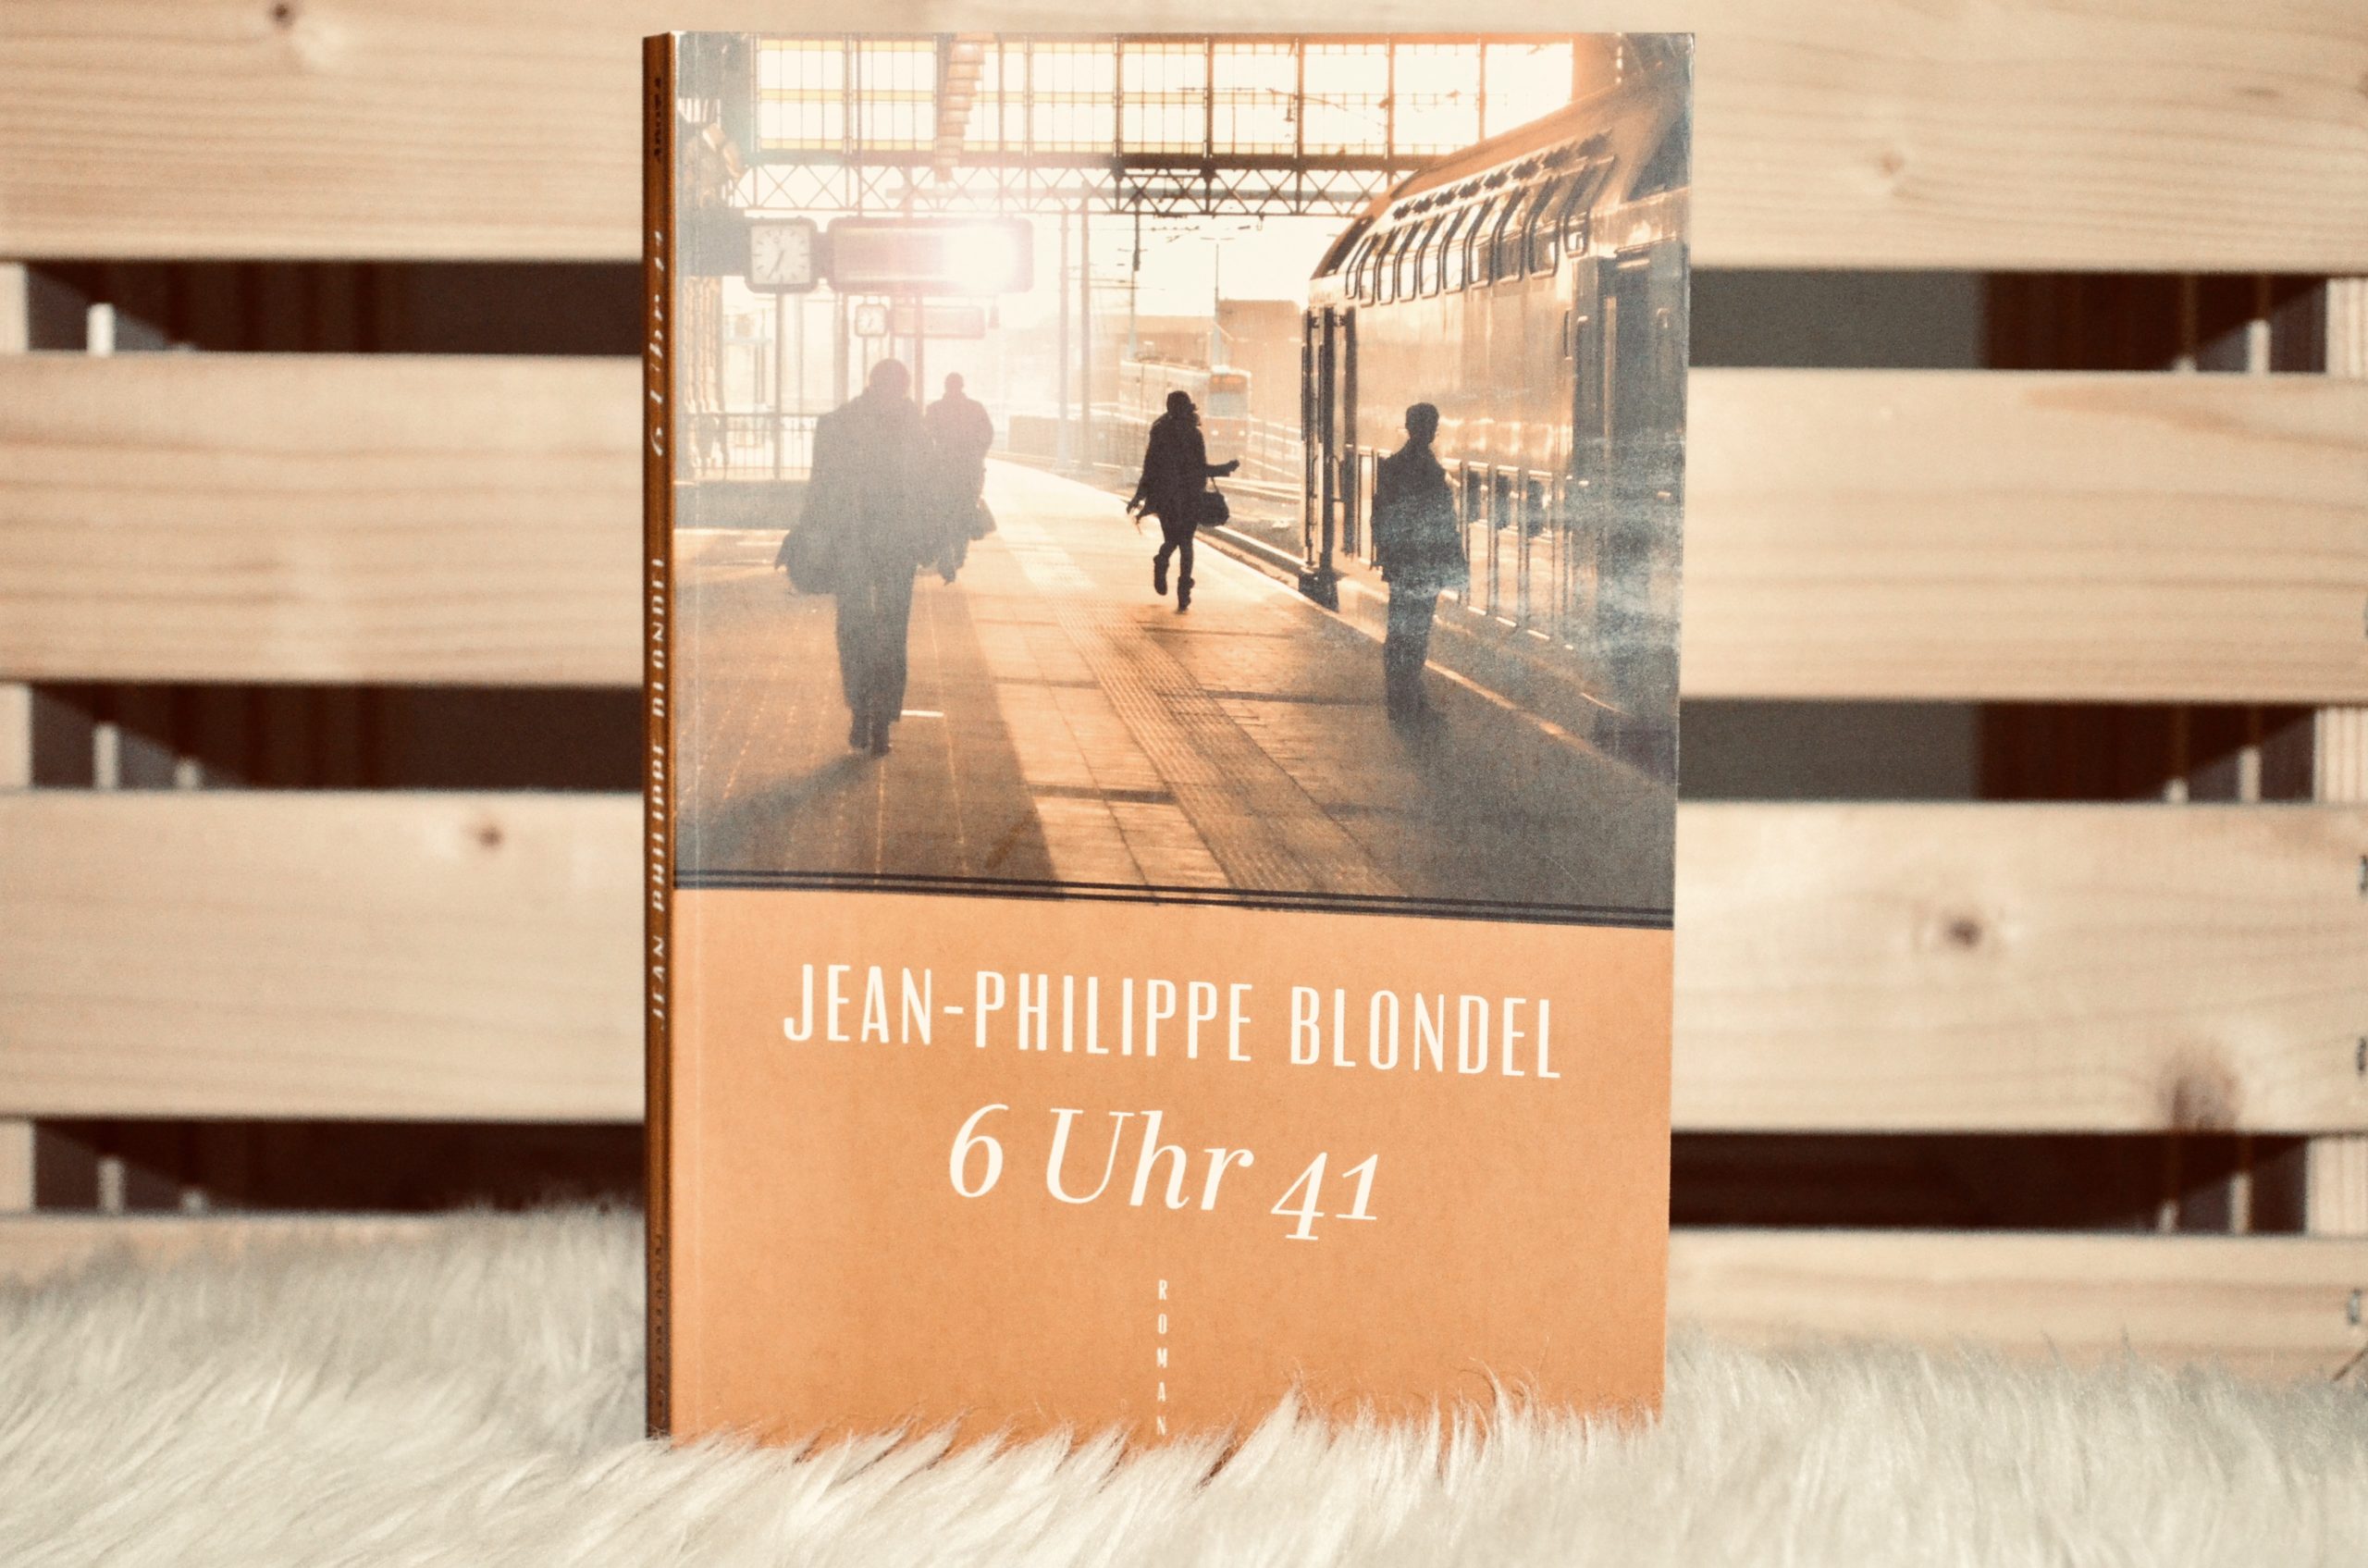 Jean-Philippe Blondel: 6 Uhr 41